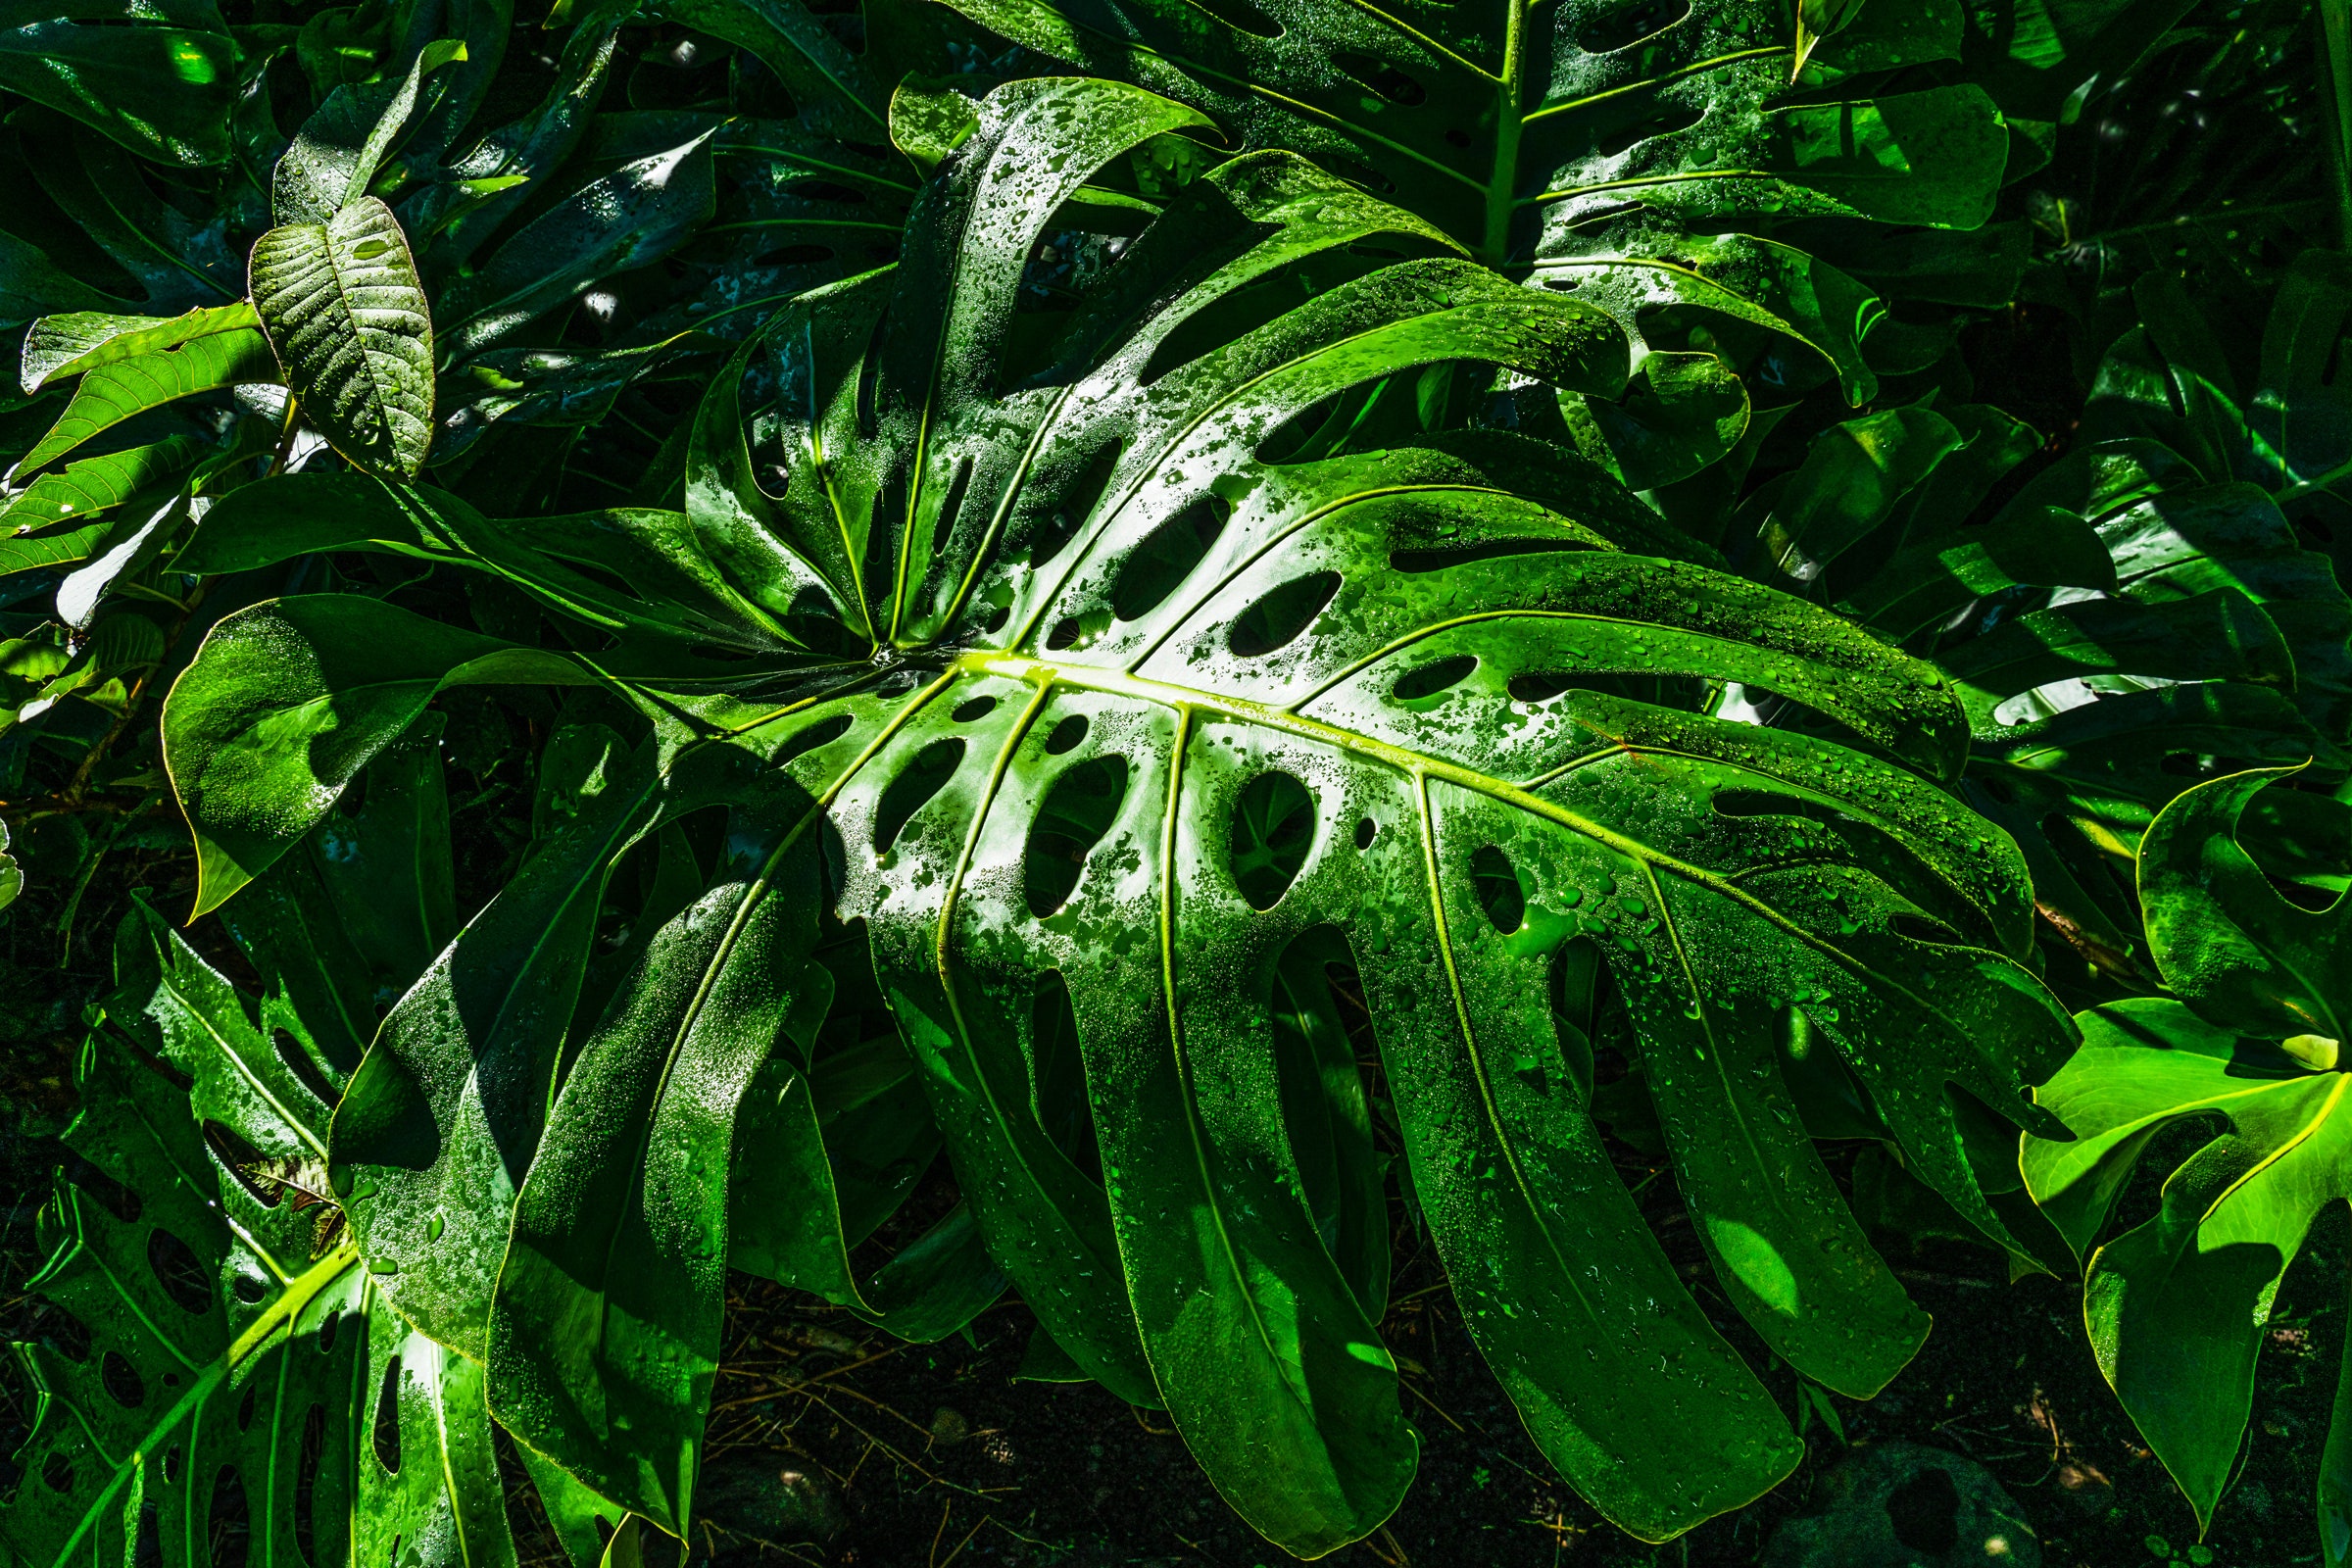 Plants store carbon